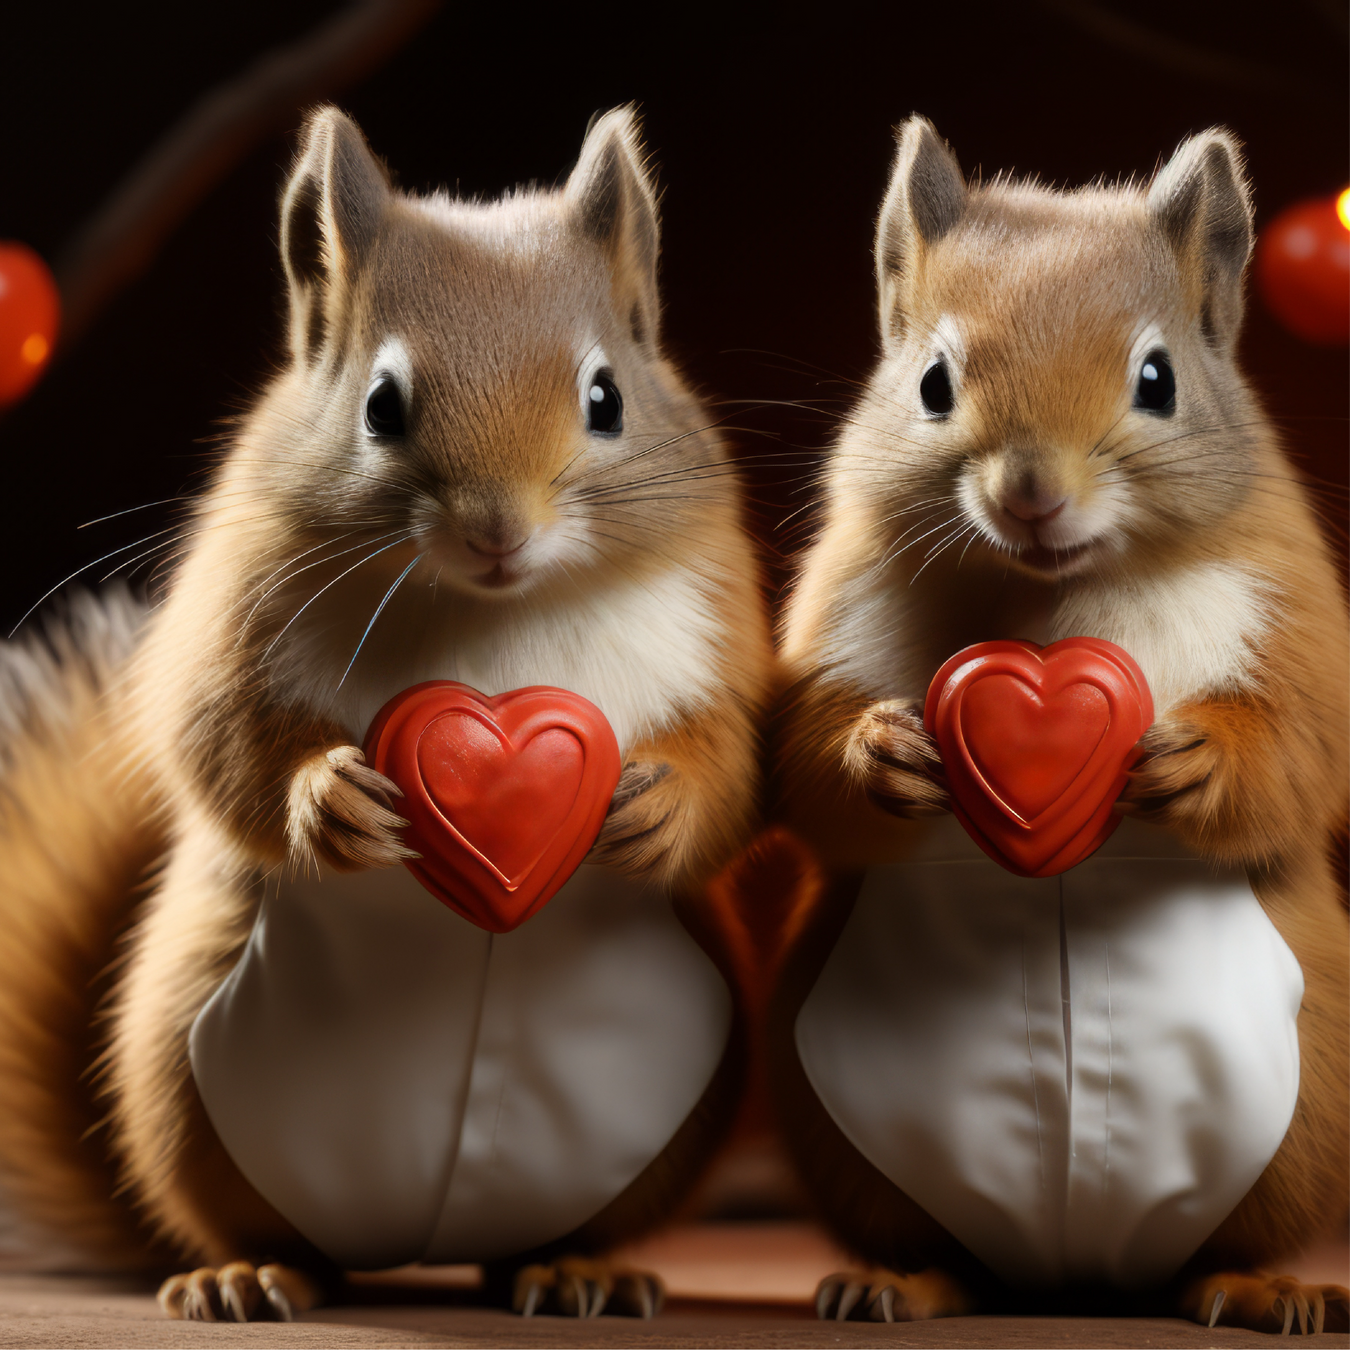 squirrels-valentine-hearts-candy